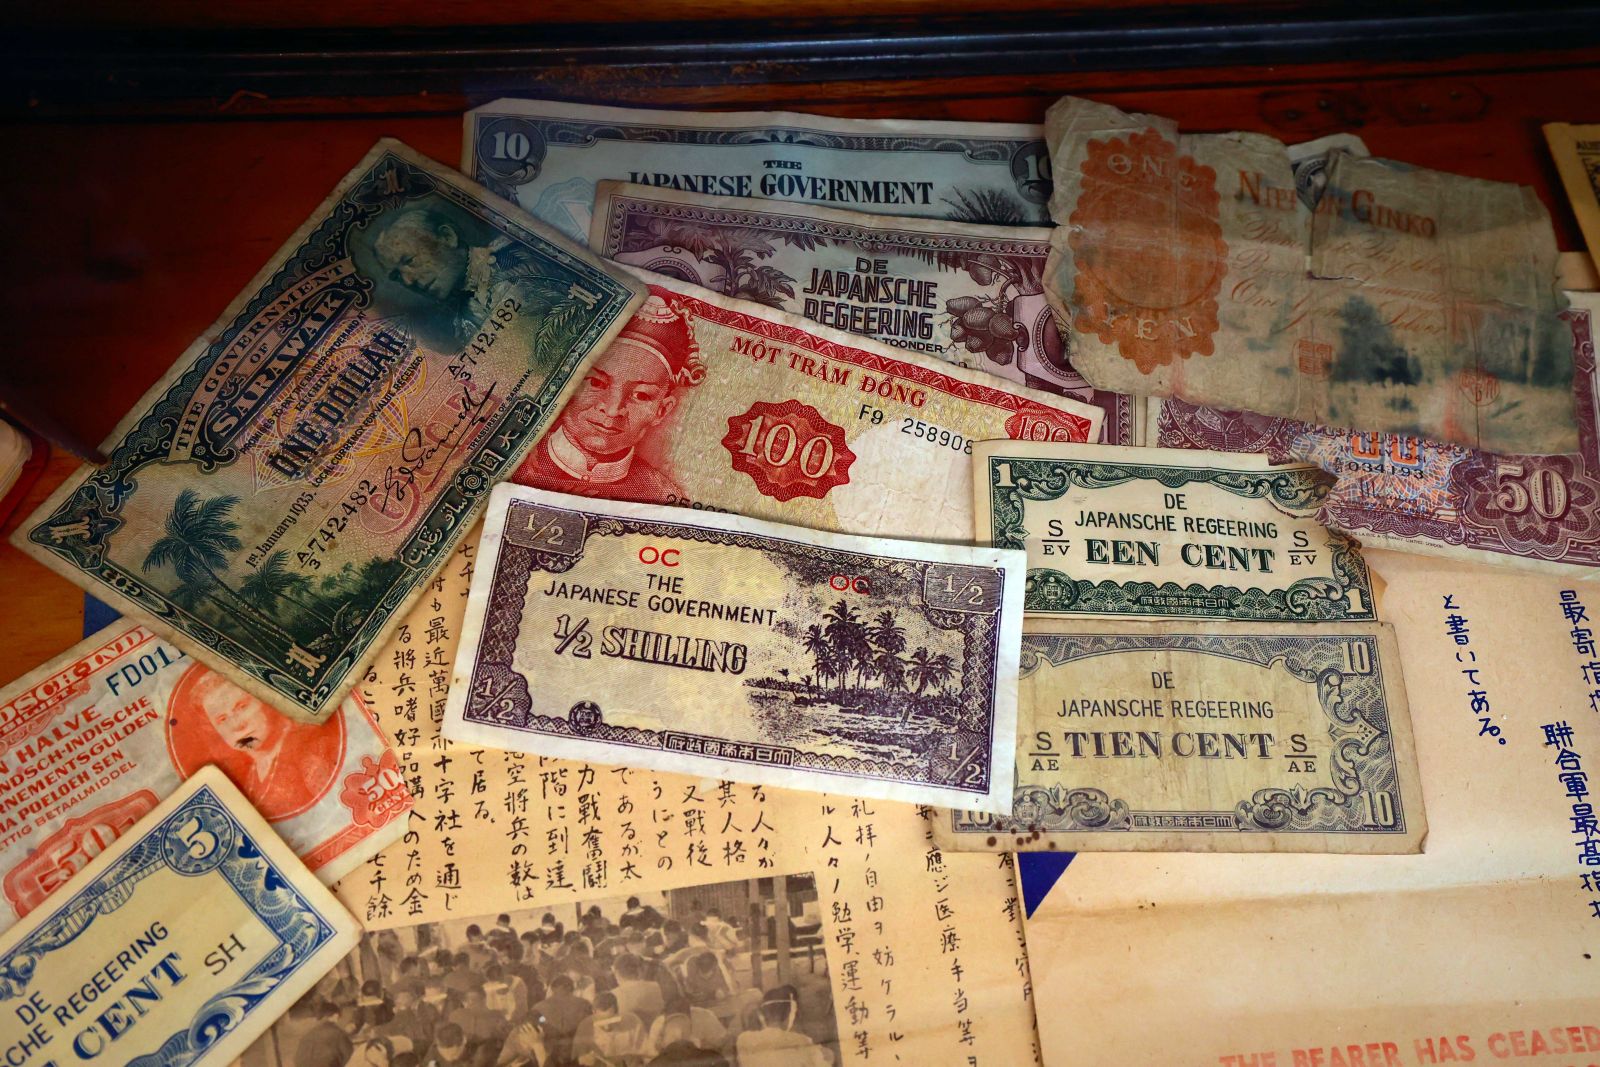 … đến cả các hiện vật và tiền giấy các loại thu được của không quân Nhật tại mặt trận Thái Bình Dương, trong đó có tờ giấy bạc in hình Tả Quân Tổng trấn Gia Định thành Lê Văn Duyệt.